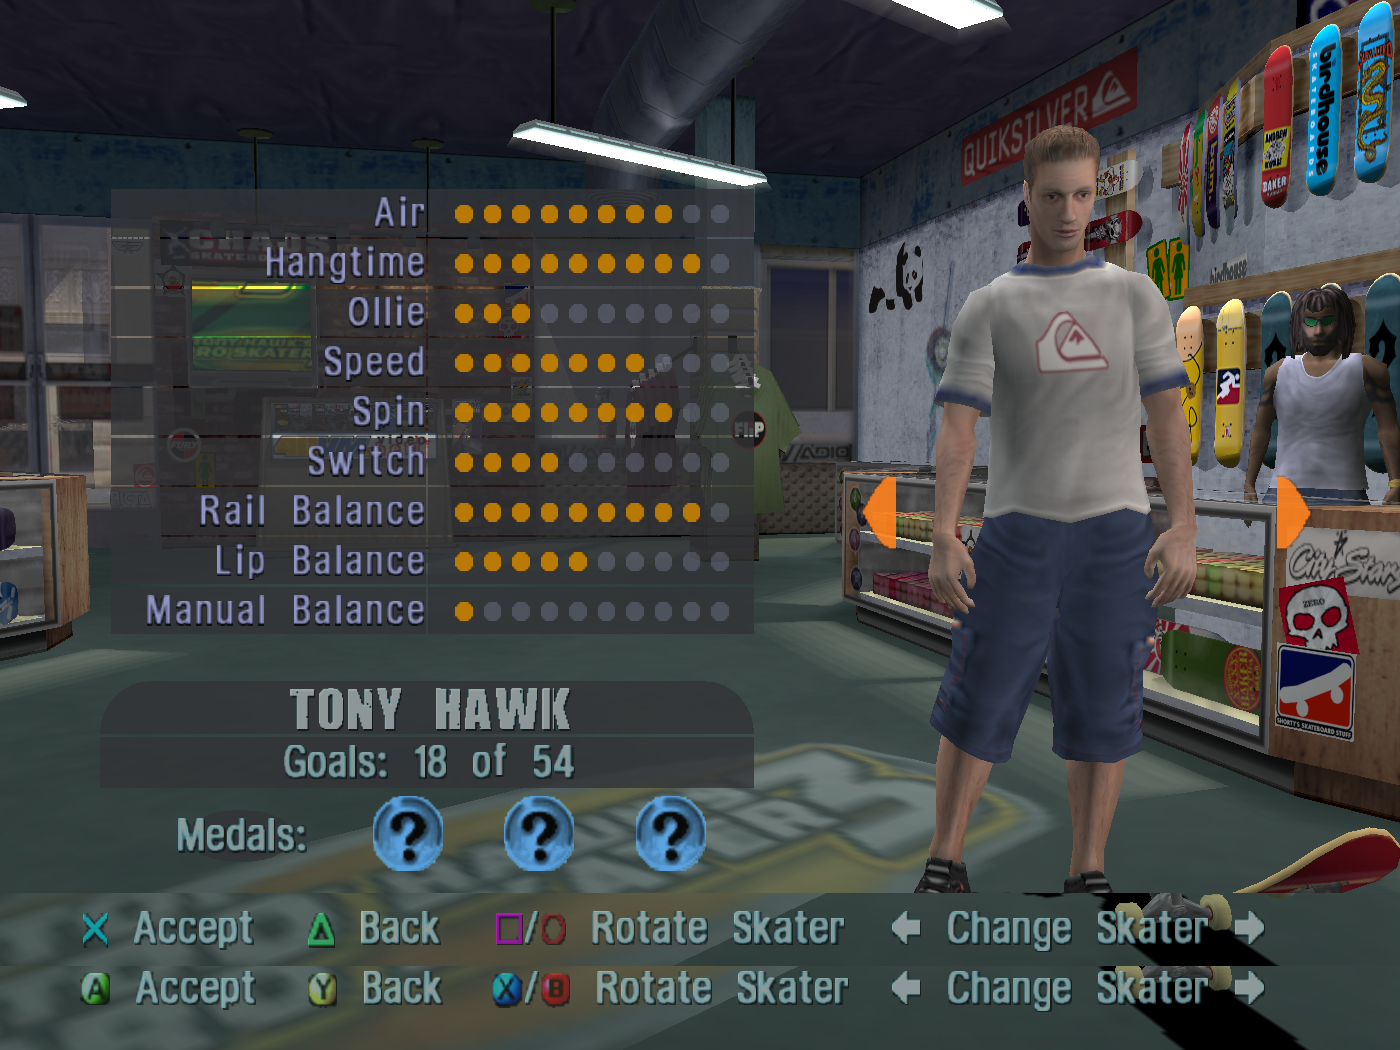 Tony Hawks Pro Skater 3 PS2  Tony hawk pro skater, Pro skaters